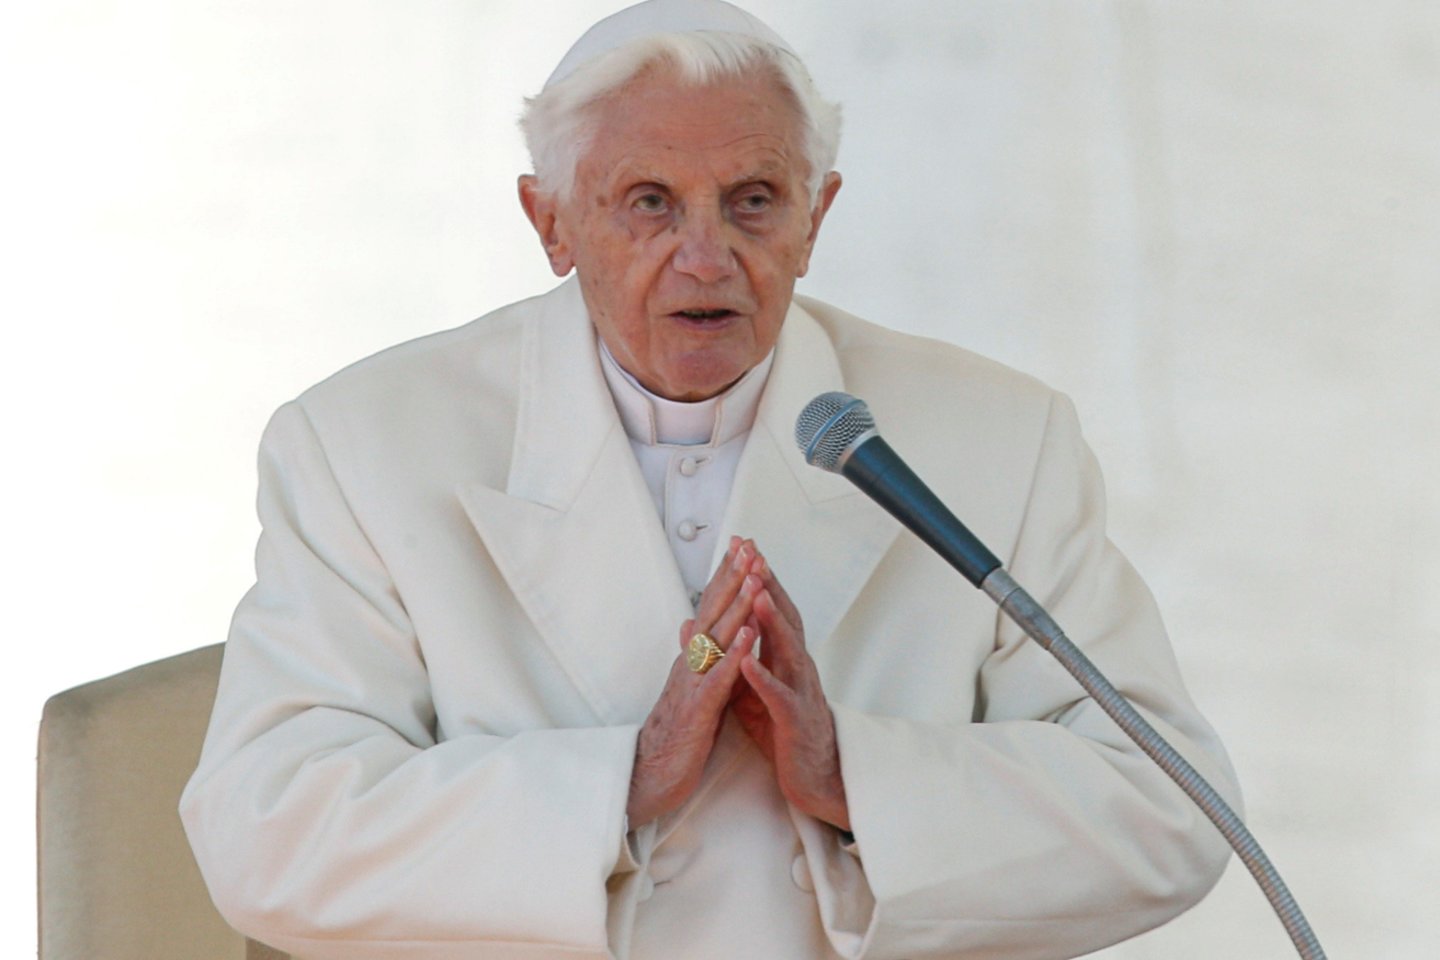 2013 m. atsistatydino 265-asis popiežius – 85 m. popiežius Benediktas XVI (Josephas Ratzingeris). Tai buvo pirmasis atvejis per pastaruosius 700 metų.<br>Reuters/Scanpix nuotr.